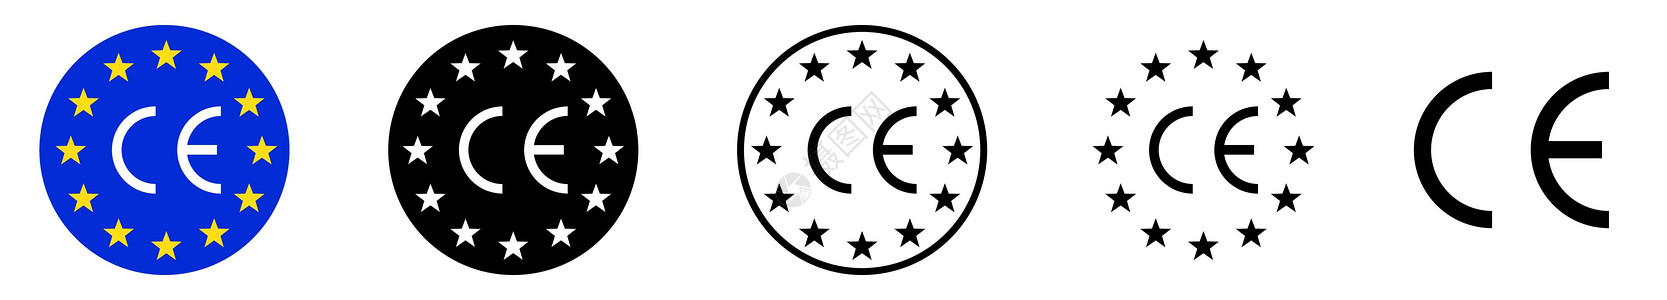 CE标记符号 矢量图标 欧洲符合性认证标记图片